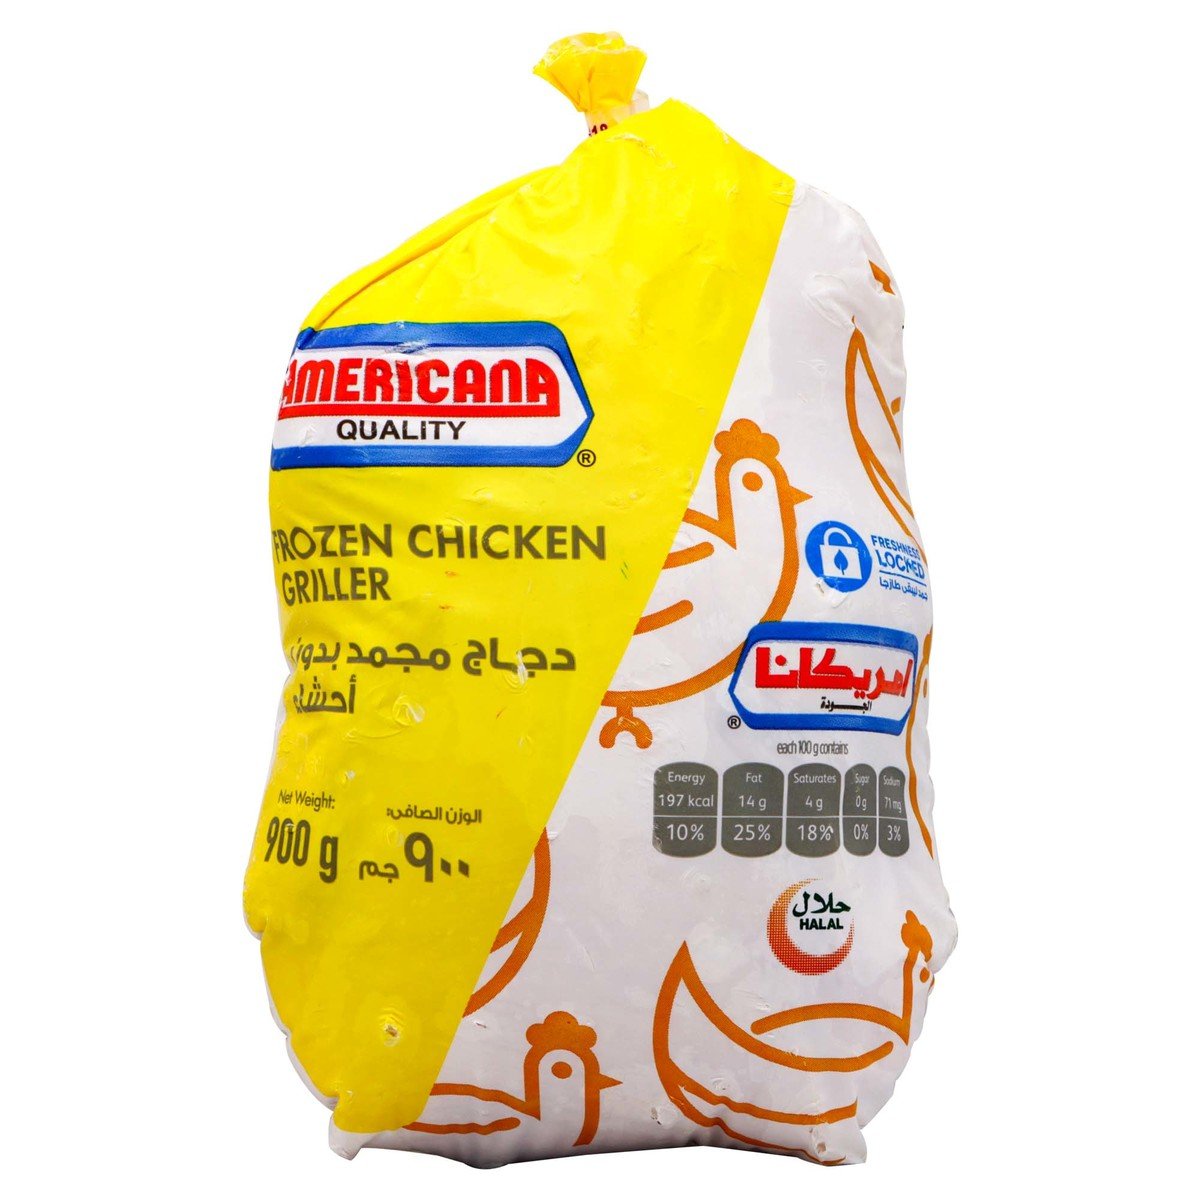 Americana Frozen Chicken Griller 900g